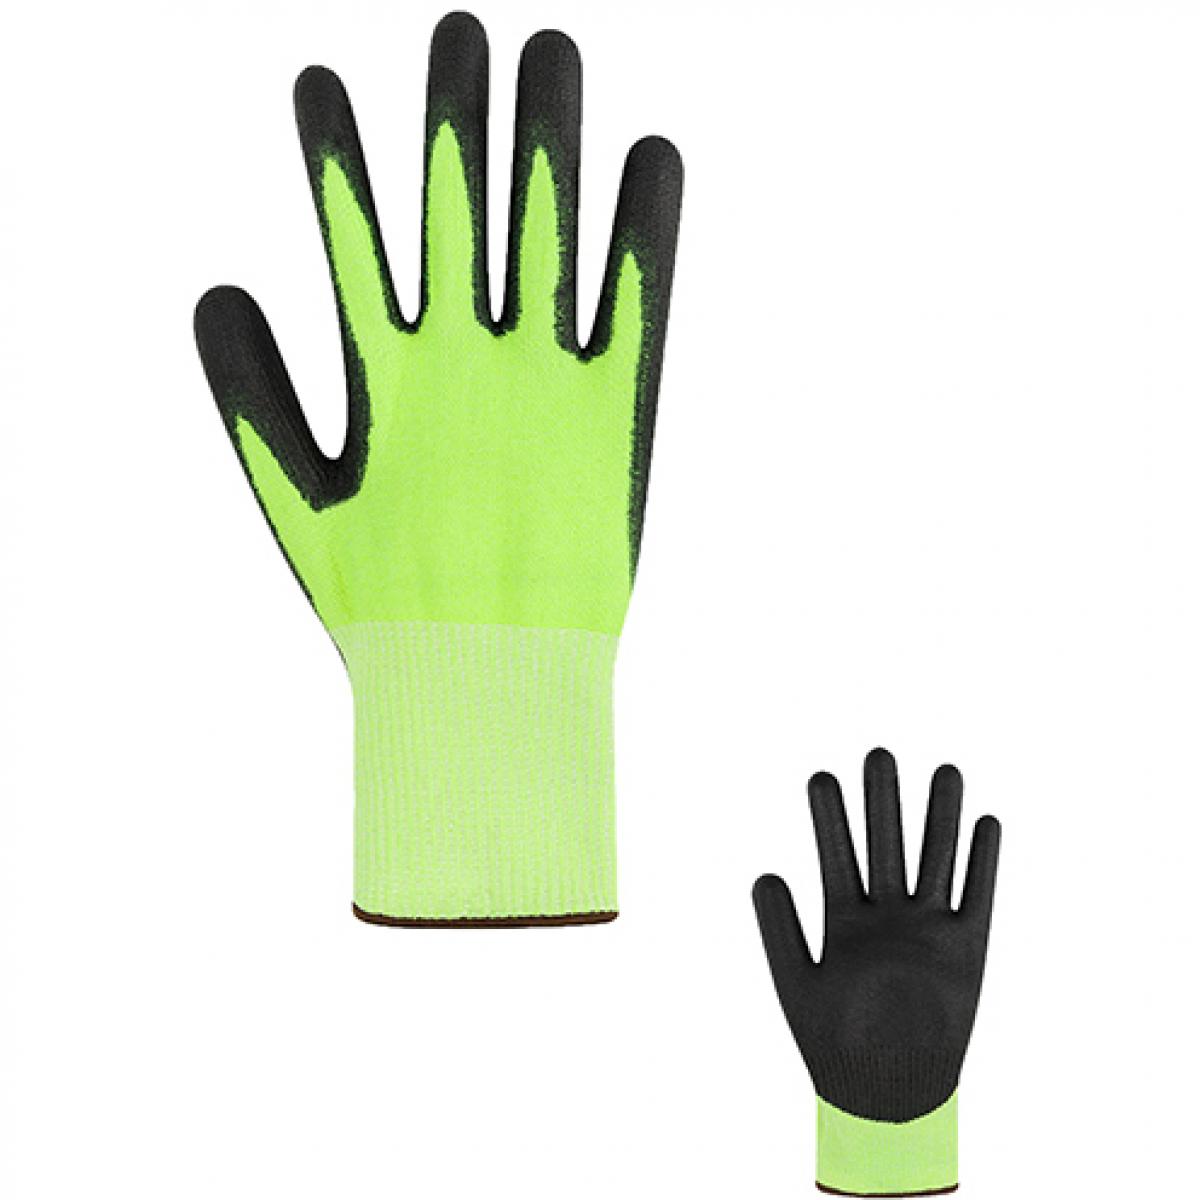 Hersteller: Korntex Herstellernummer: HSCUT Artikelbezeichnung: Cut-Resistant Gloves Adana Schnittschutzhandschuh Farbe: Yellow/Black